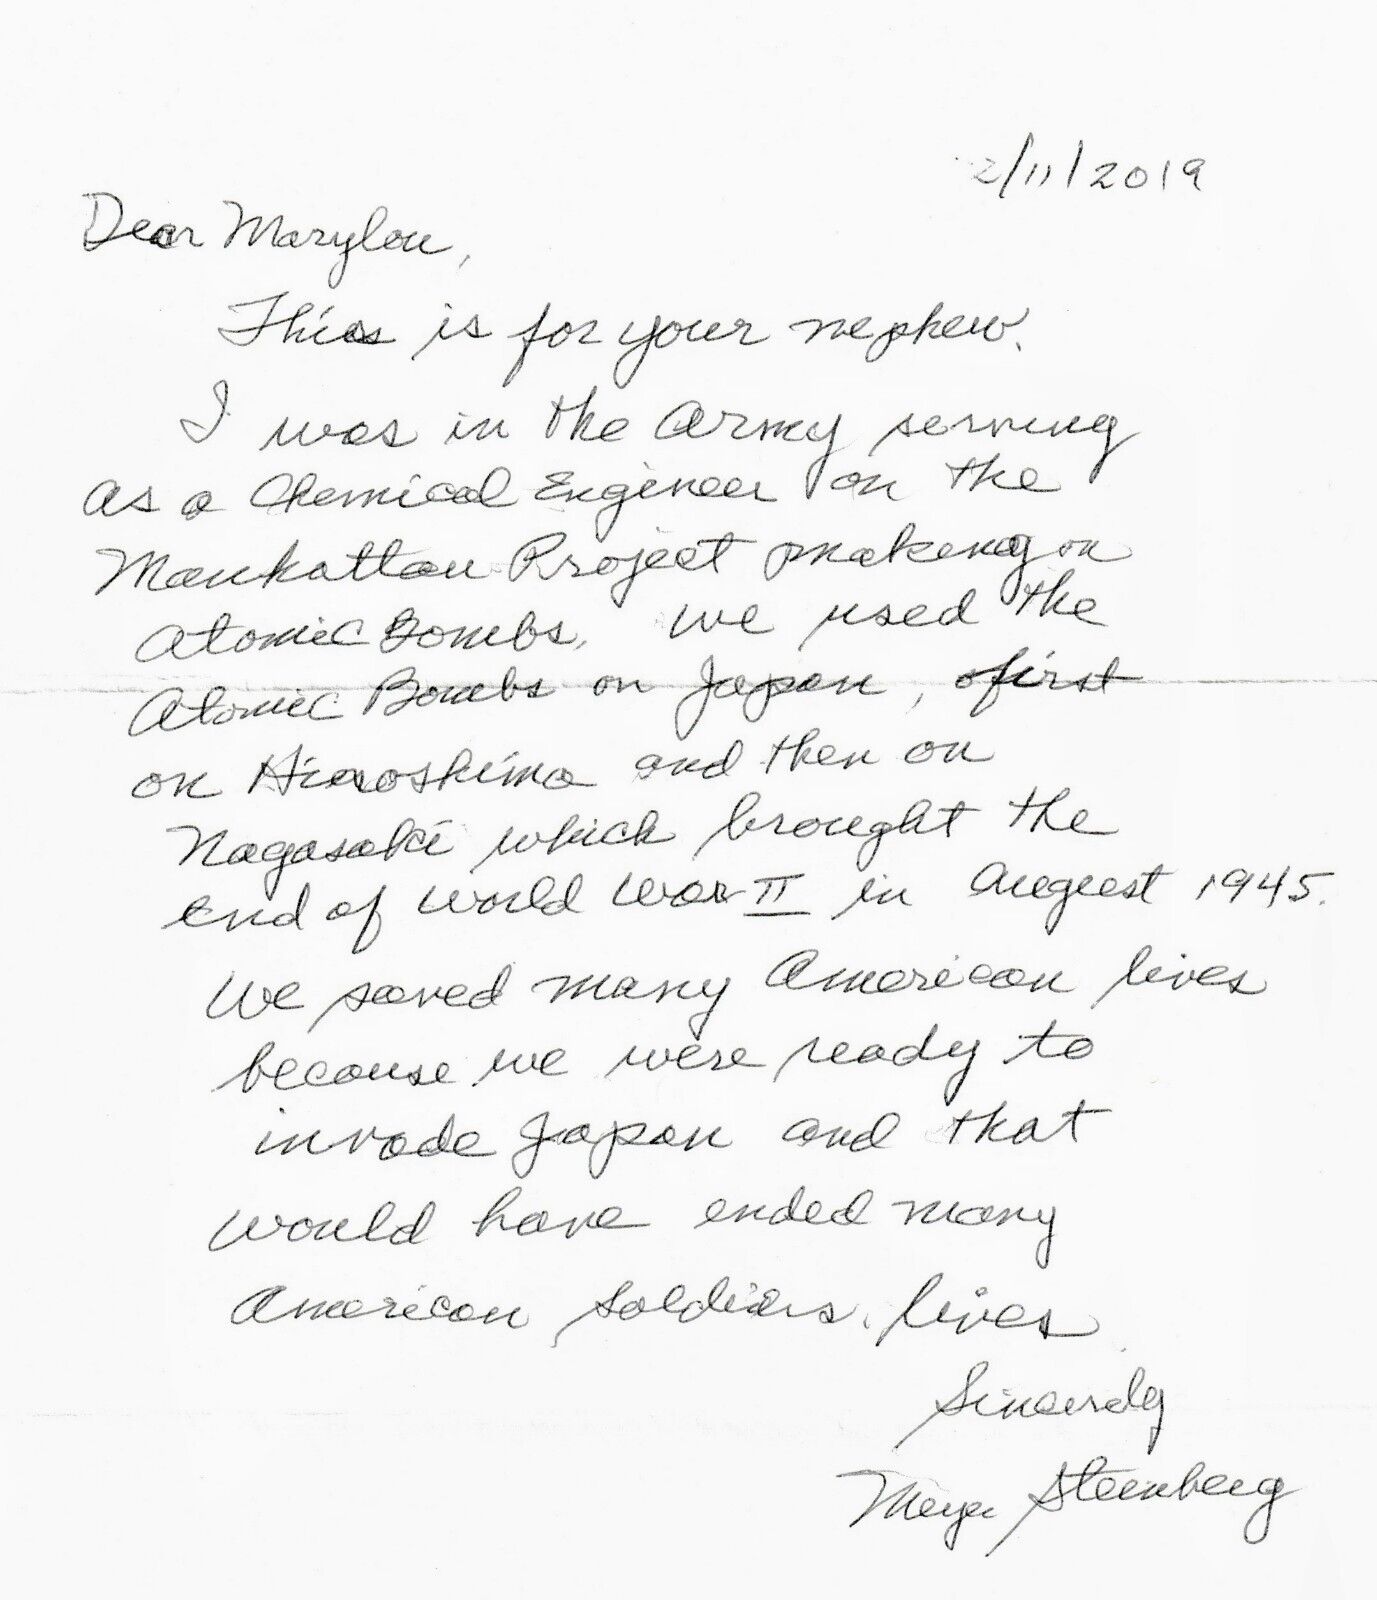 Meyer Steinberg Engineer MANHATTAN PROJECT OPPENHEIMER MOVIE Historic Letter